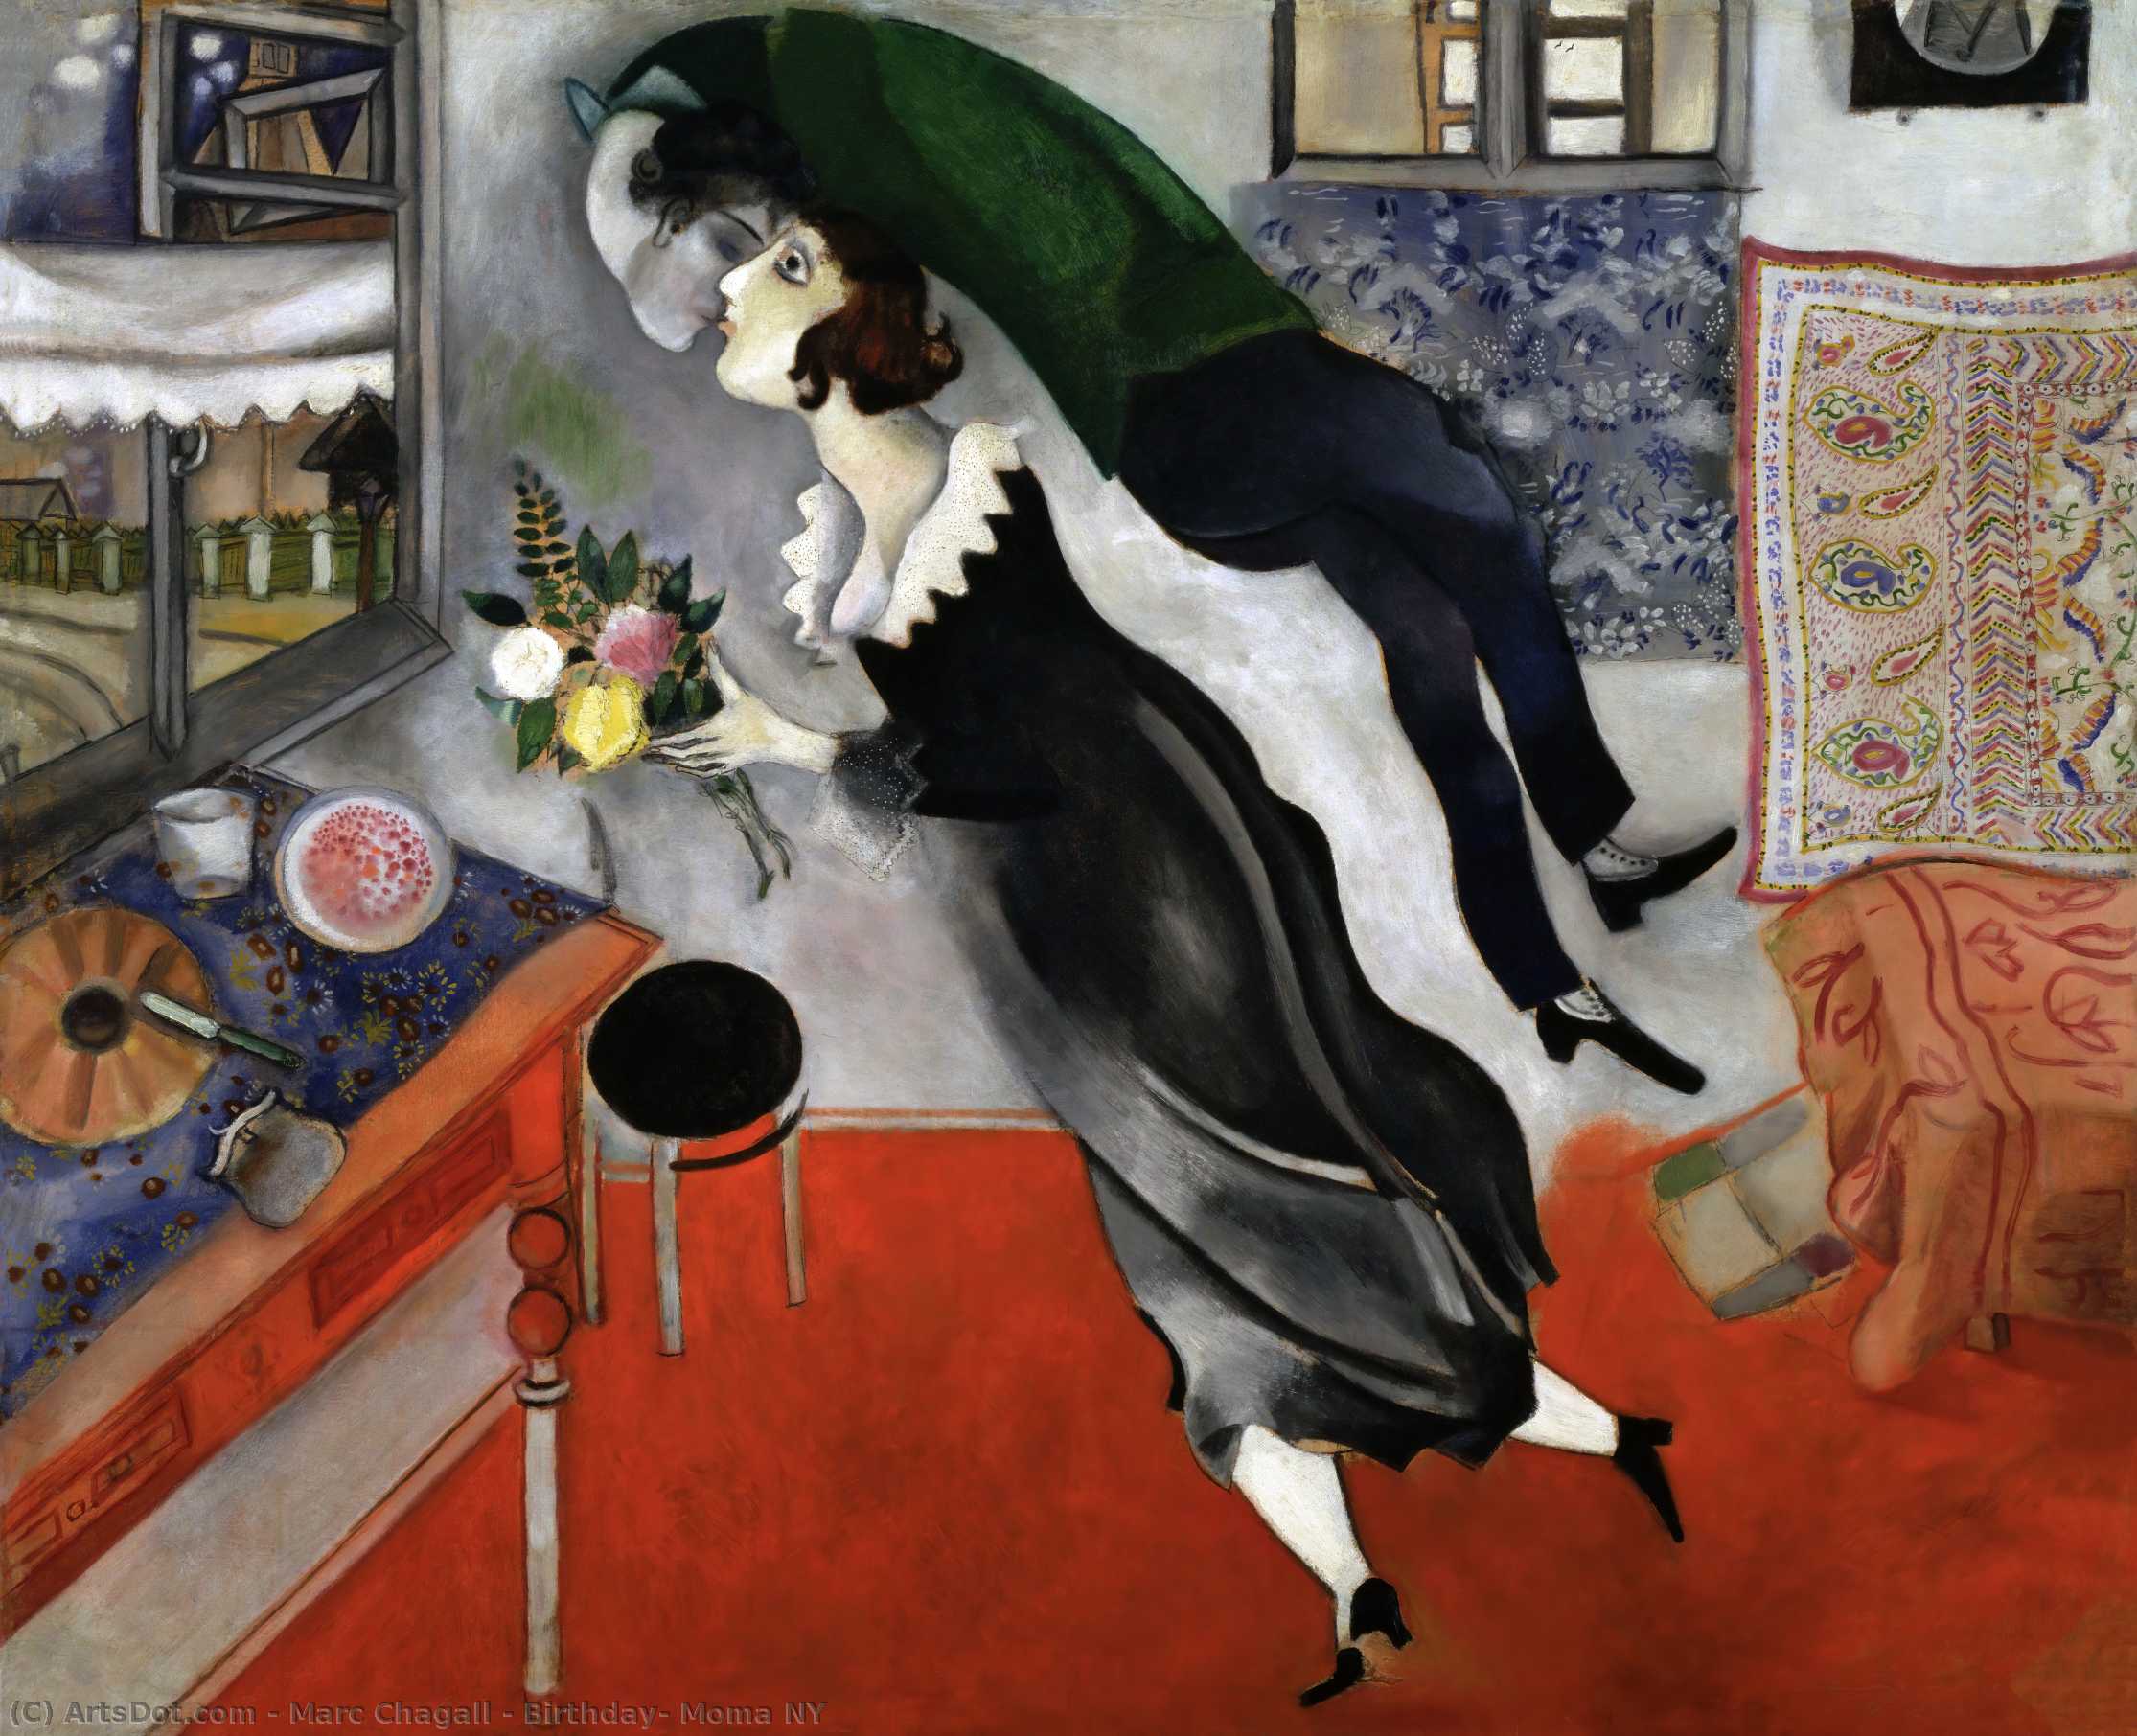 WikiOO.org - Encyclopedia of Fine Arts - Målning, konstverk Marc Chagall - Birthday, Moma NY